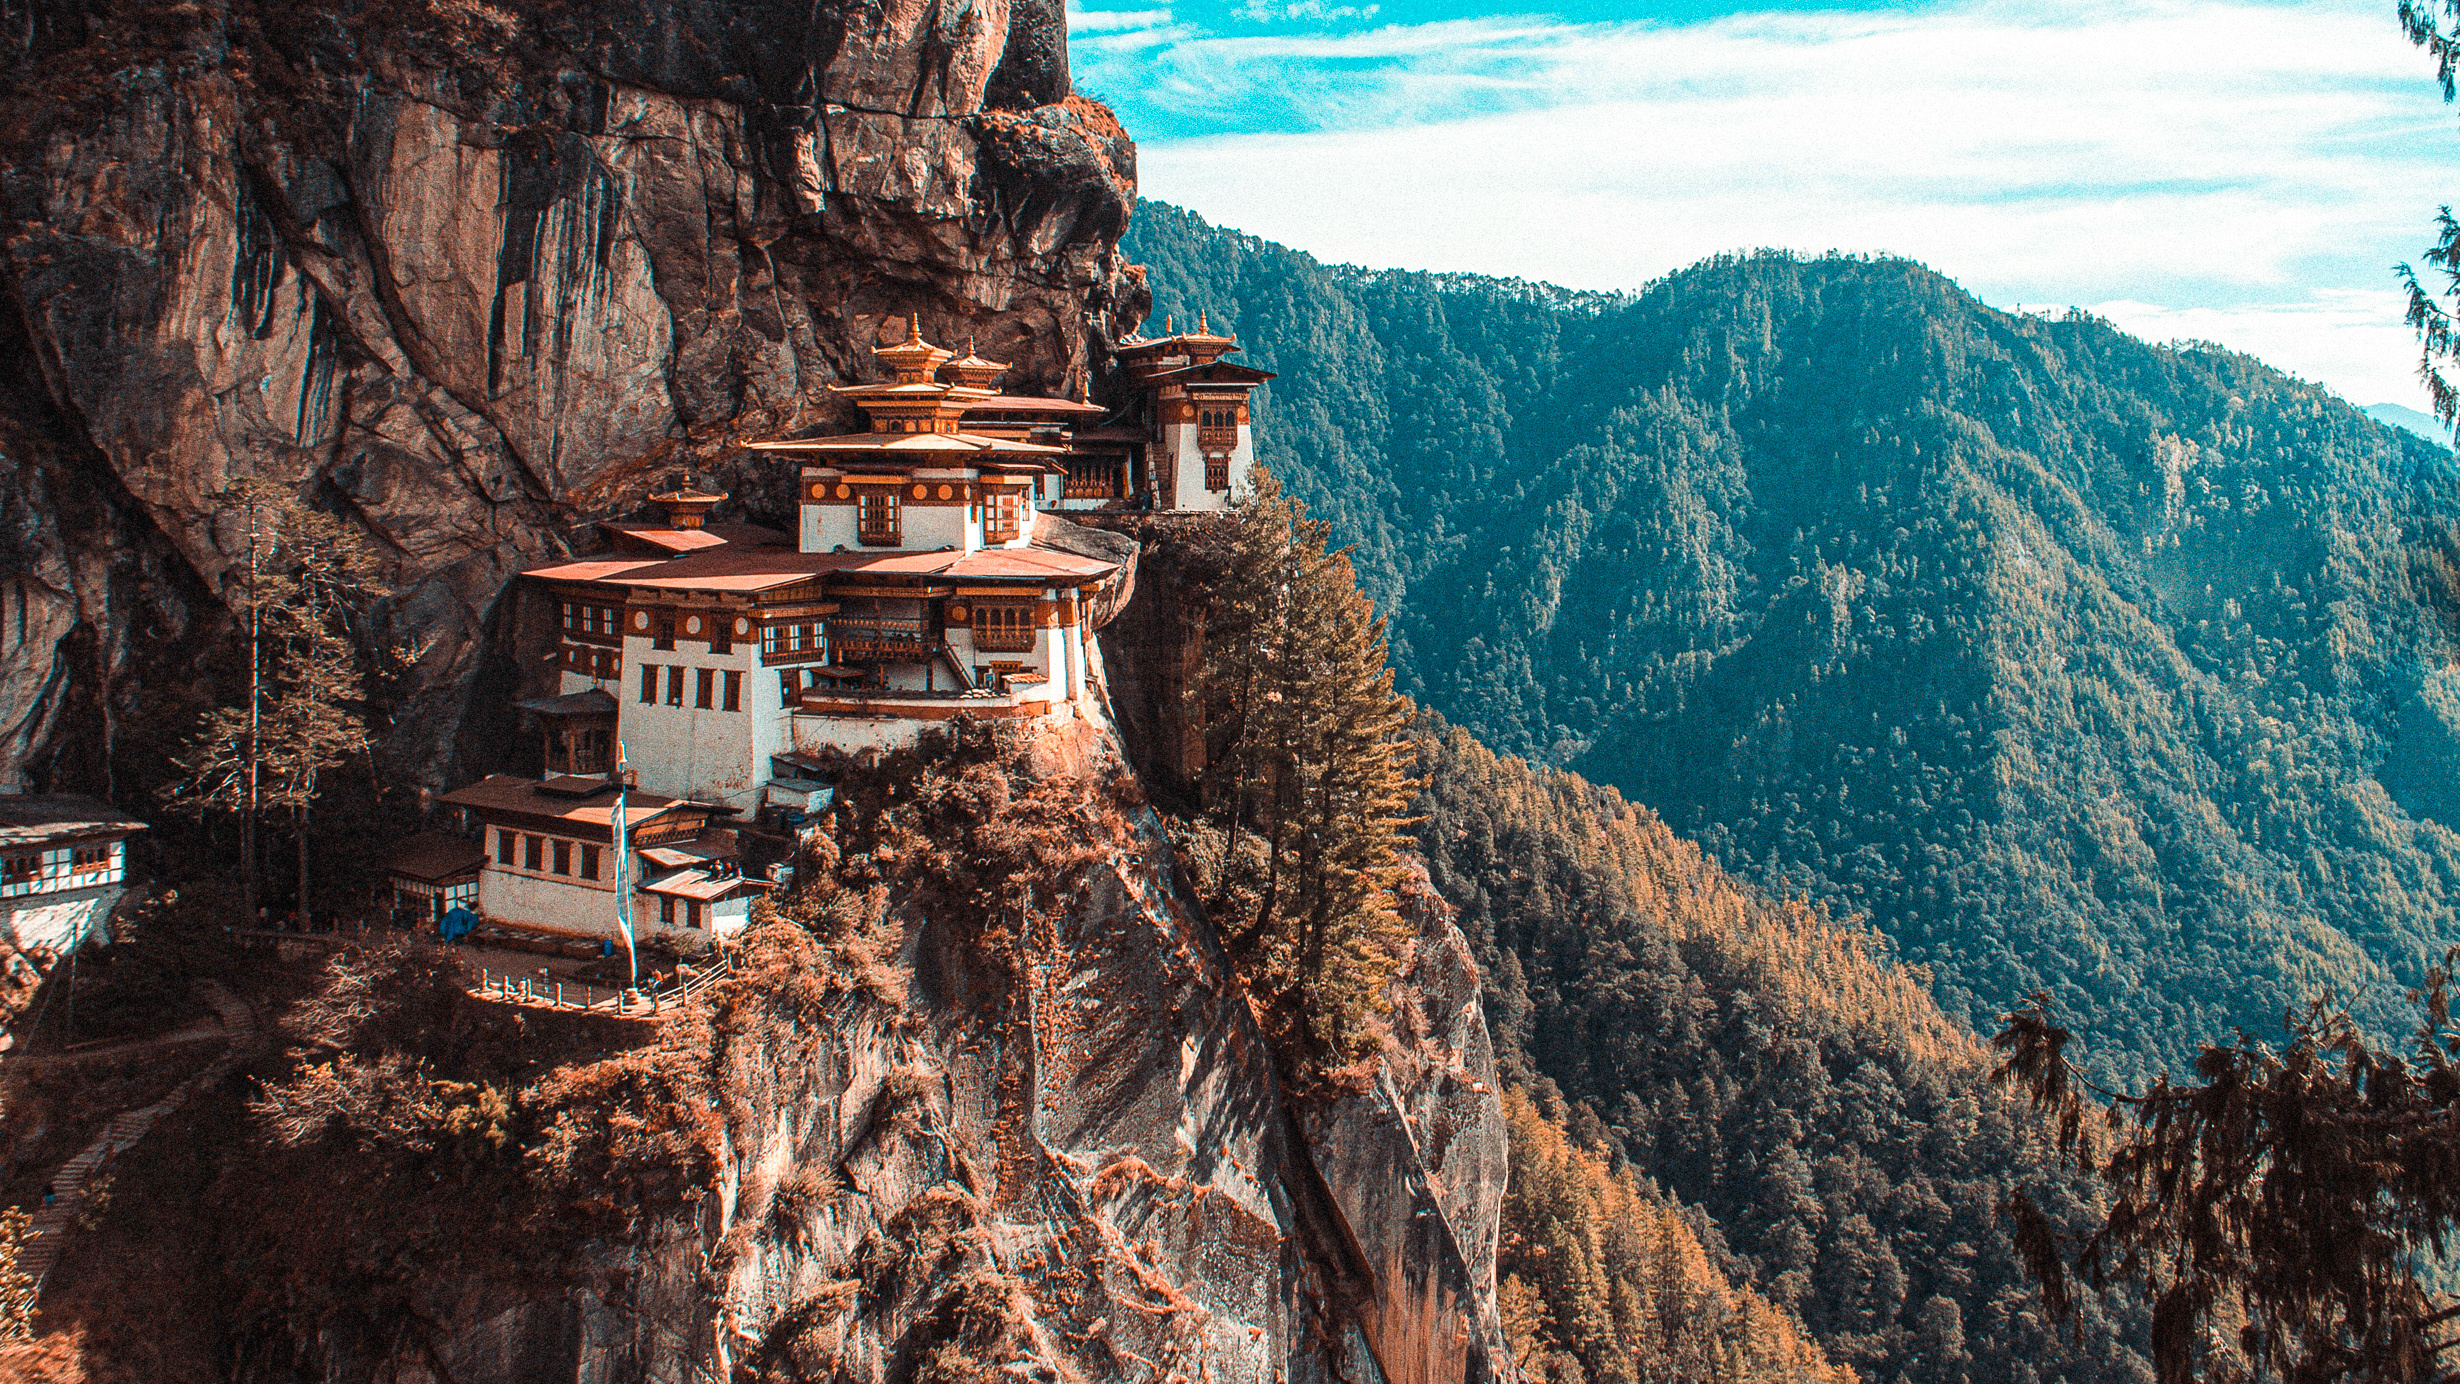 Bhutan travels, Asia travel guide, Must-visit destinations, Hidden gems, 2460x1390 HD Desktop